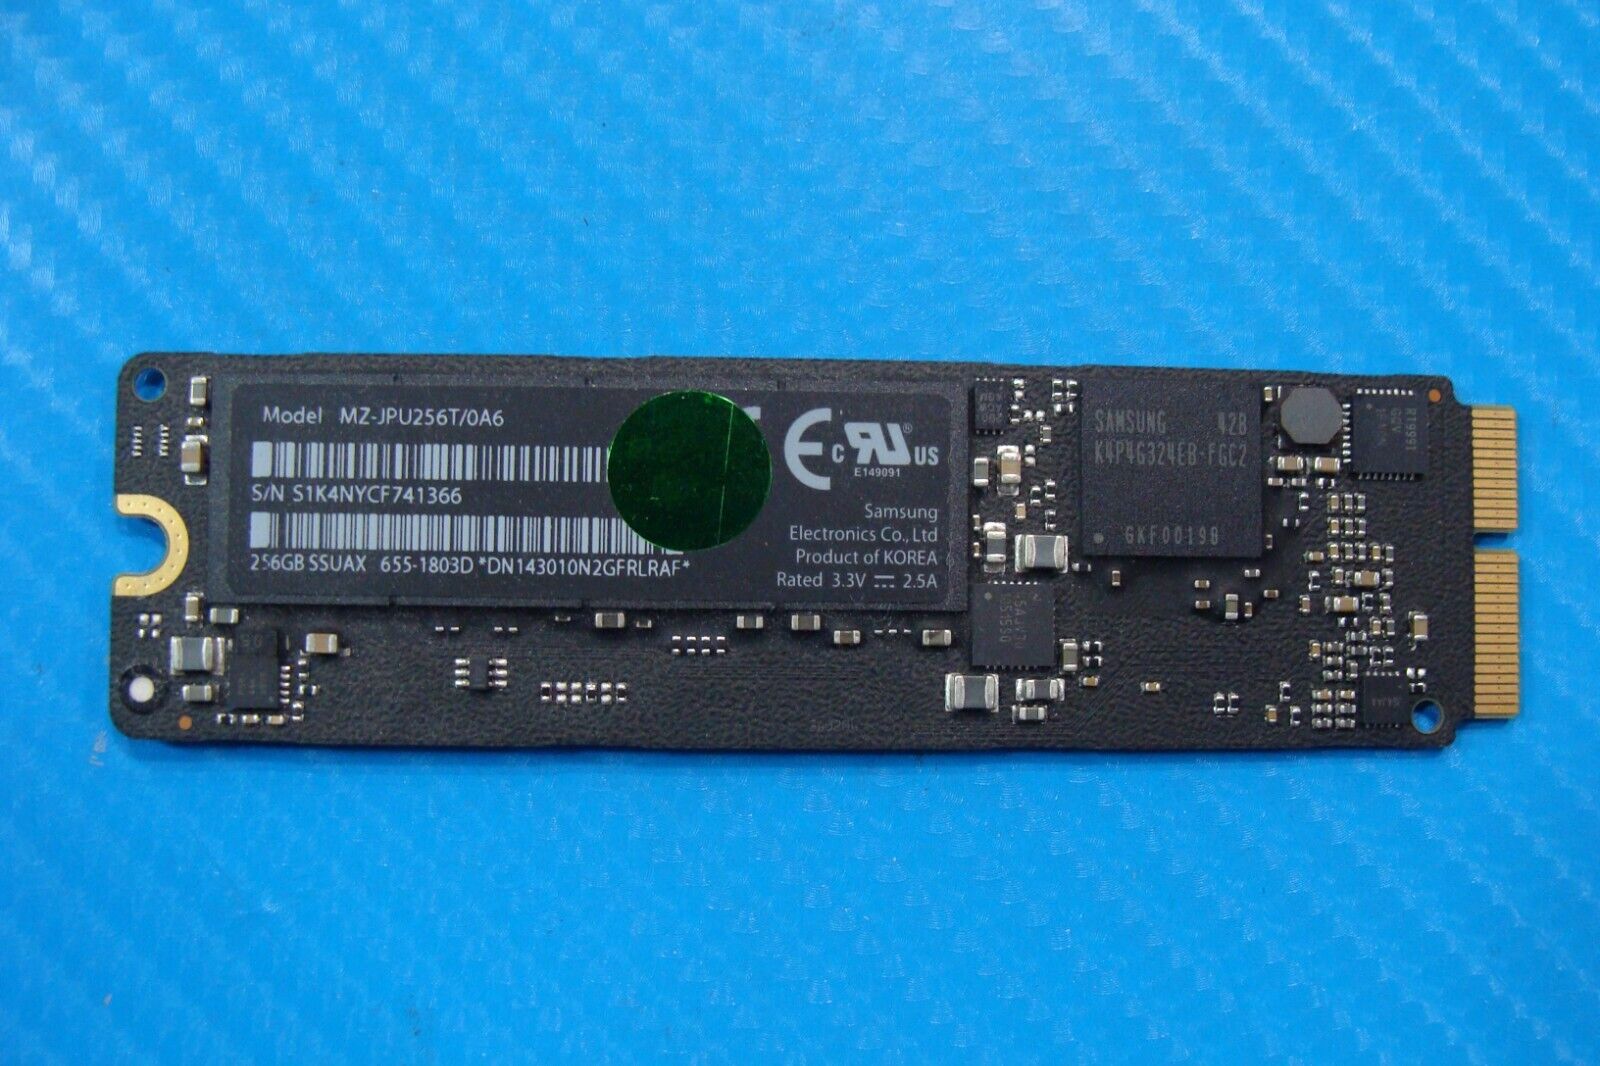 MacBook Pro A1398 Samsung 256GB SSD Solid State Drive 655-1803D MZ-JPU256T/0A6